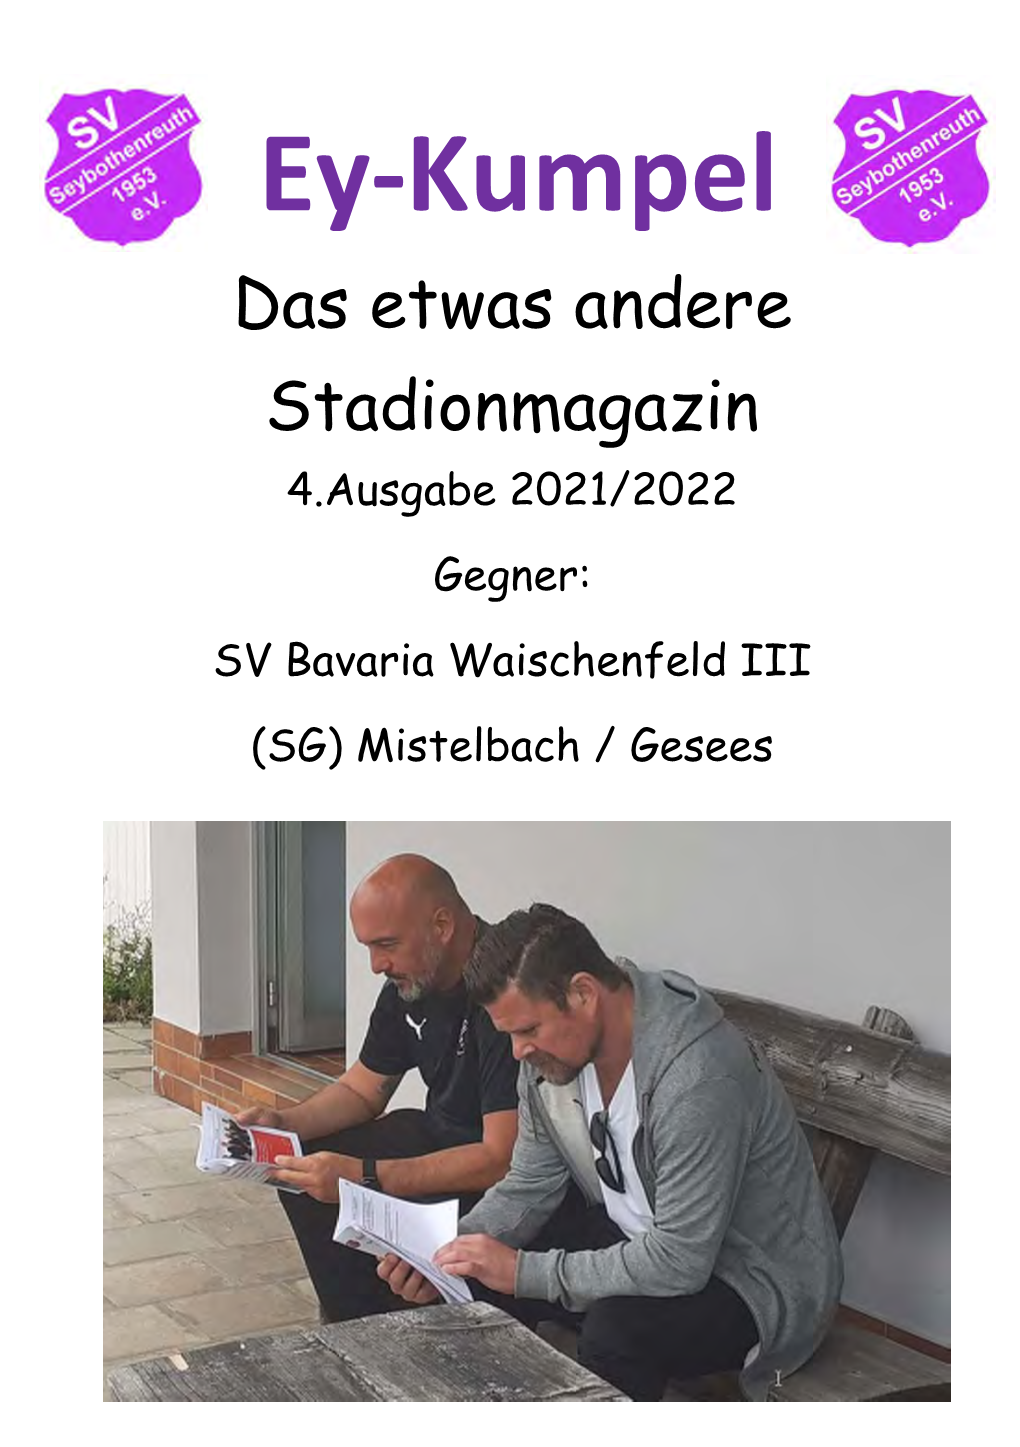 Ey-Kumpel Das Etwas Andere Stadionmagazin 4.Ausgabe 2021/2022